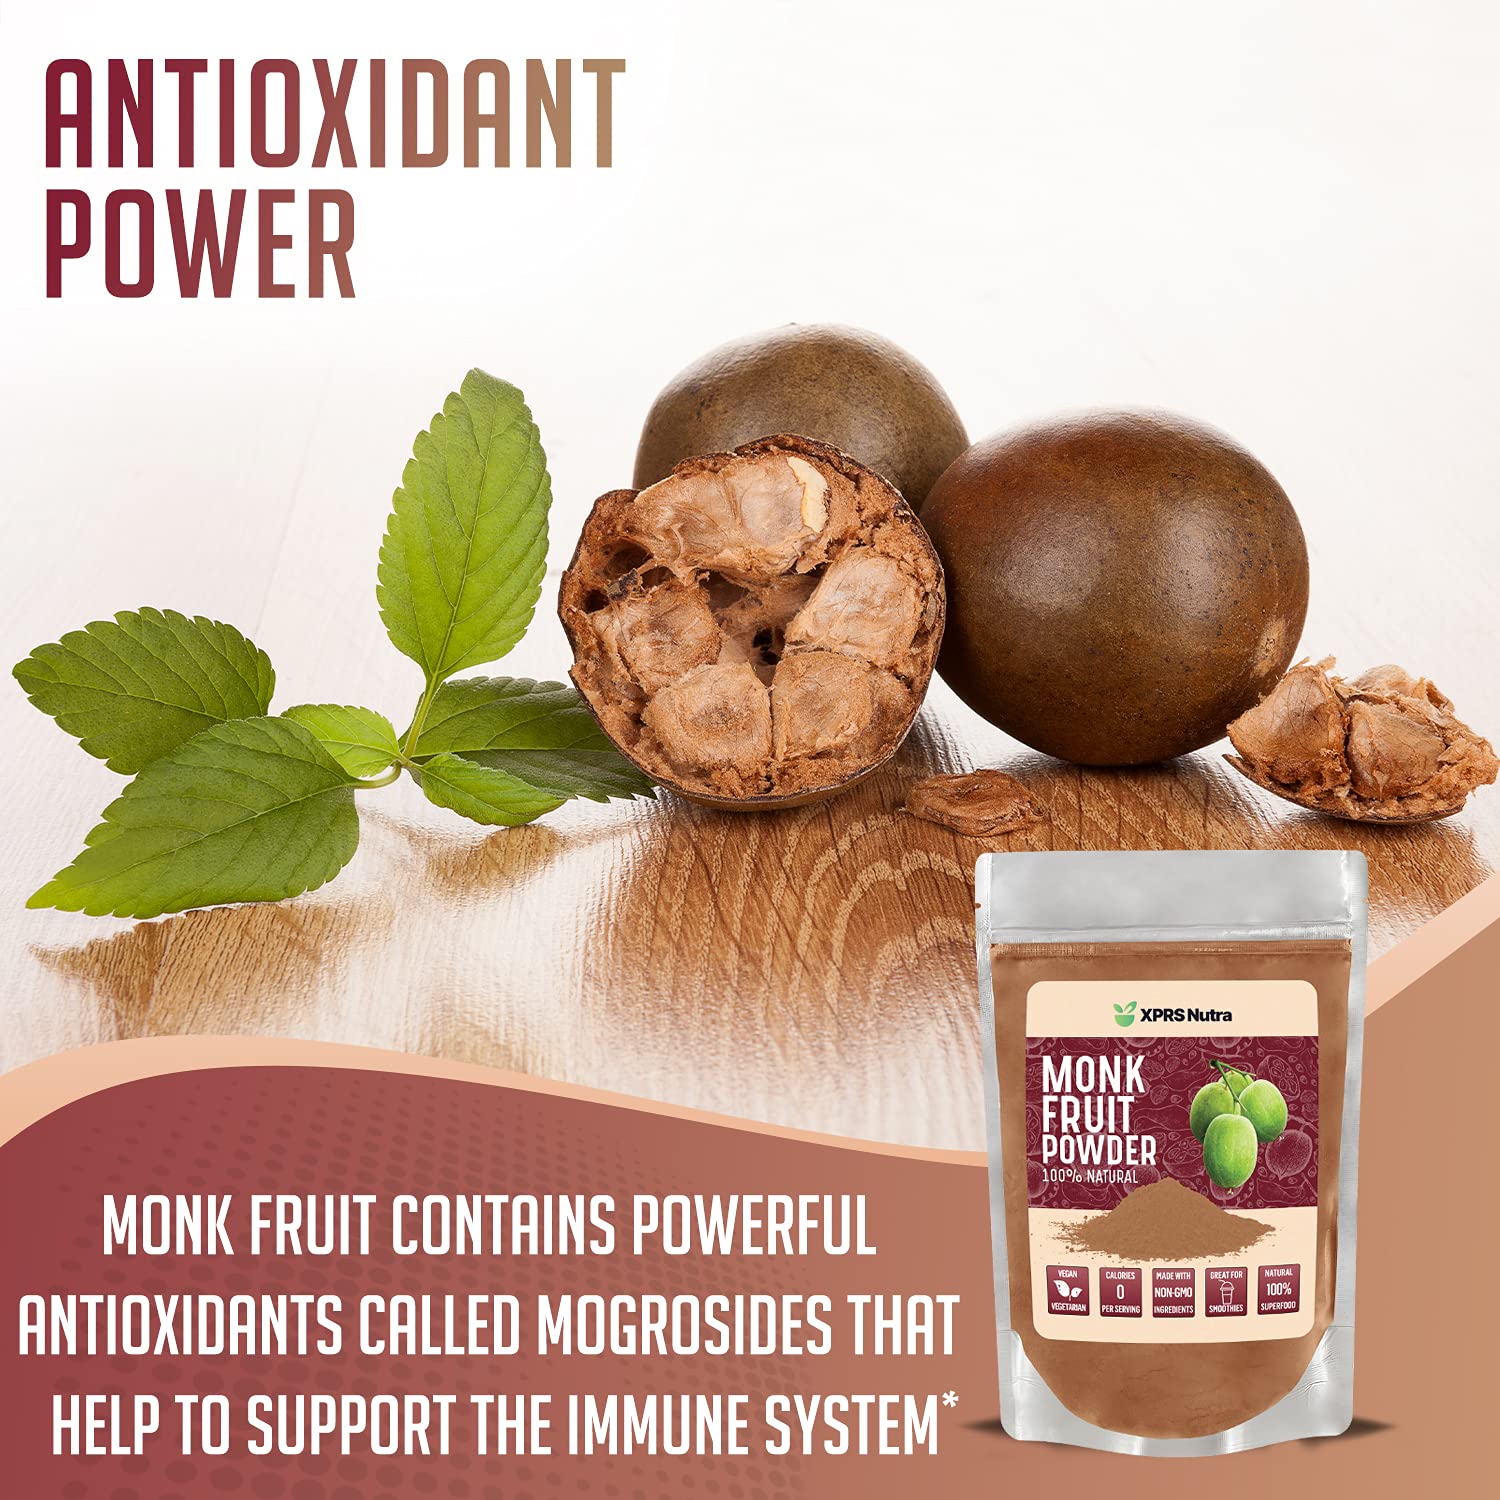 Monk Fruit Powder